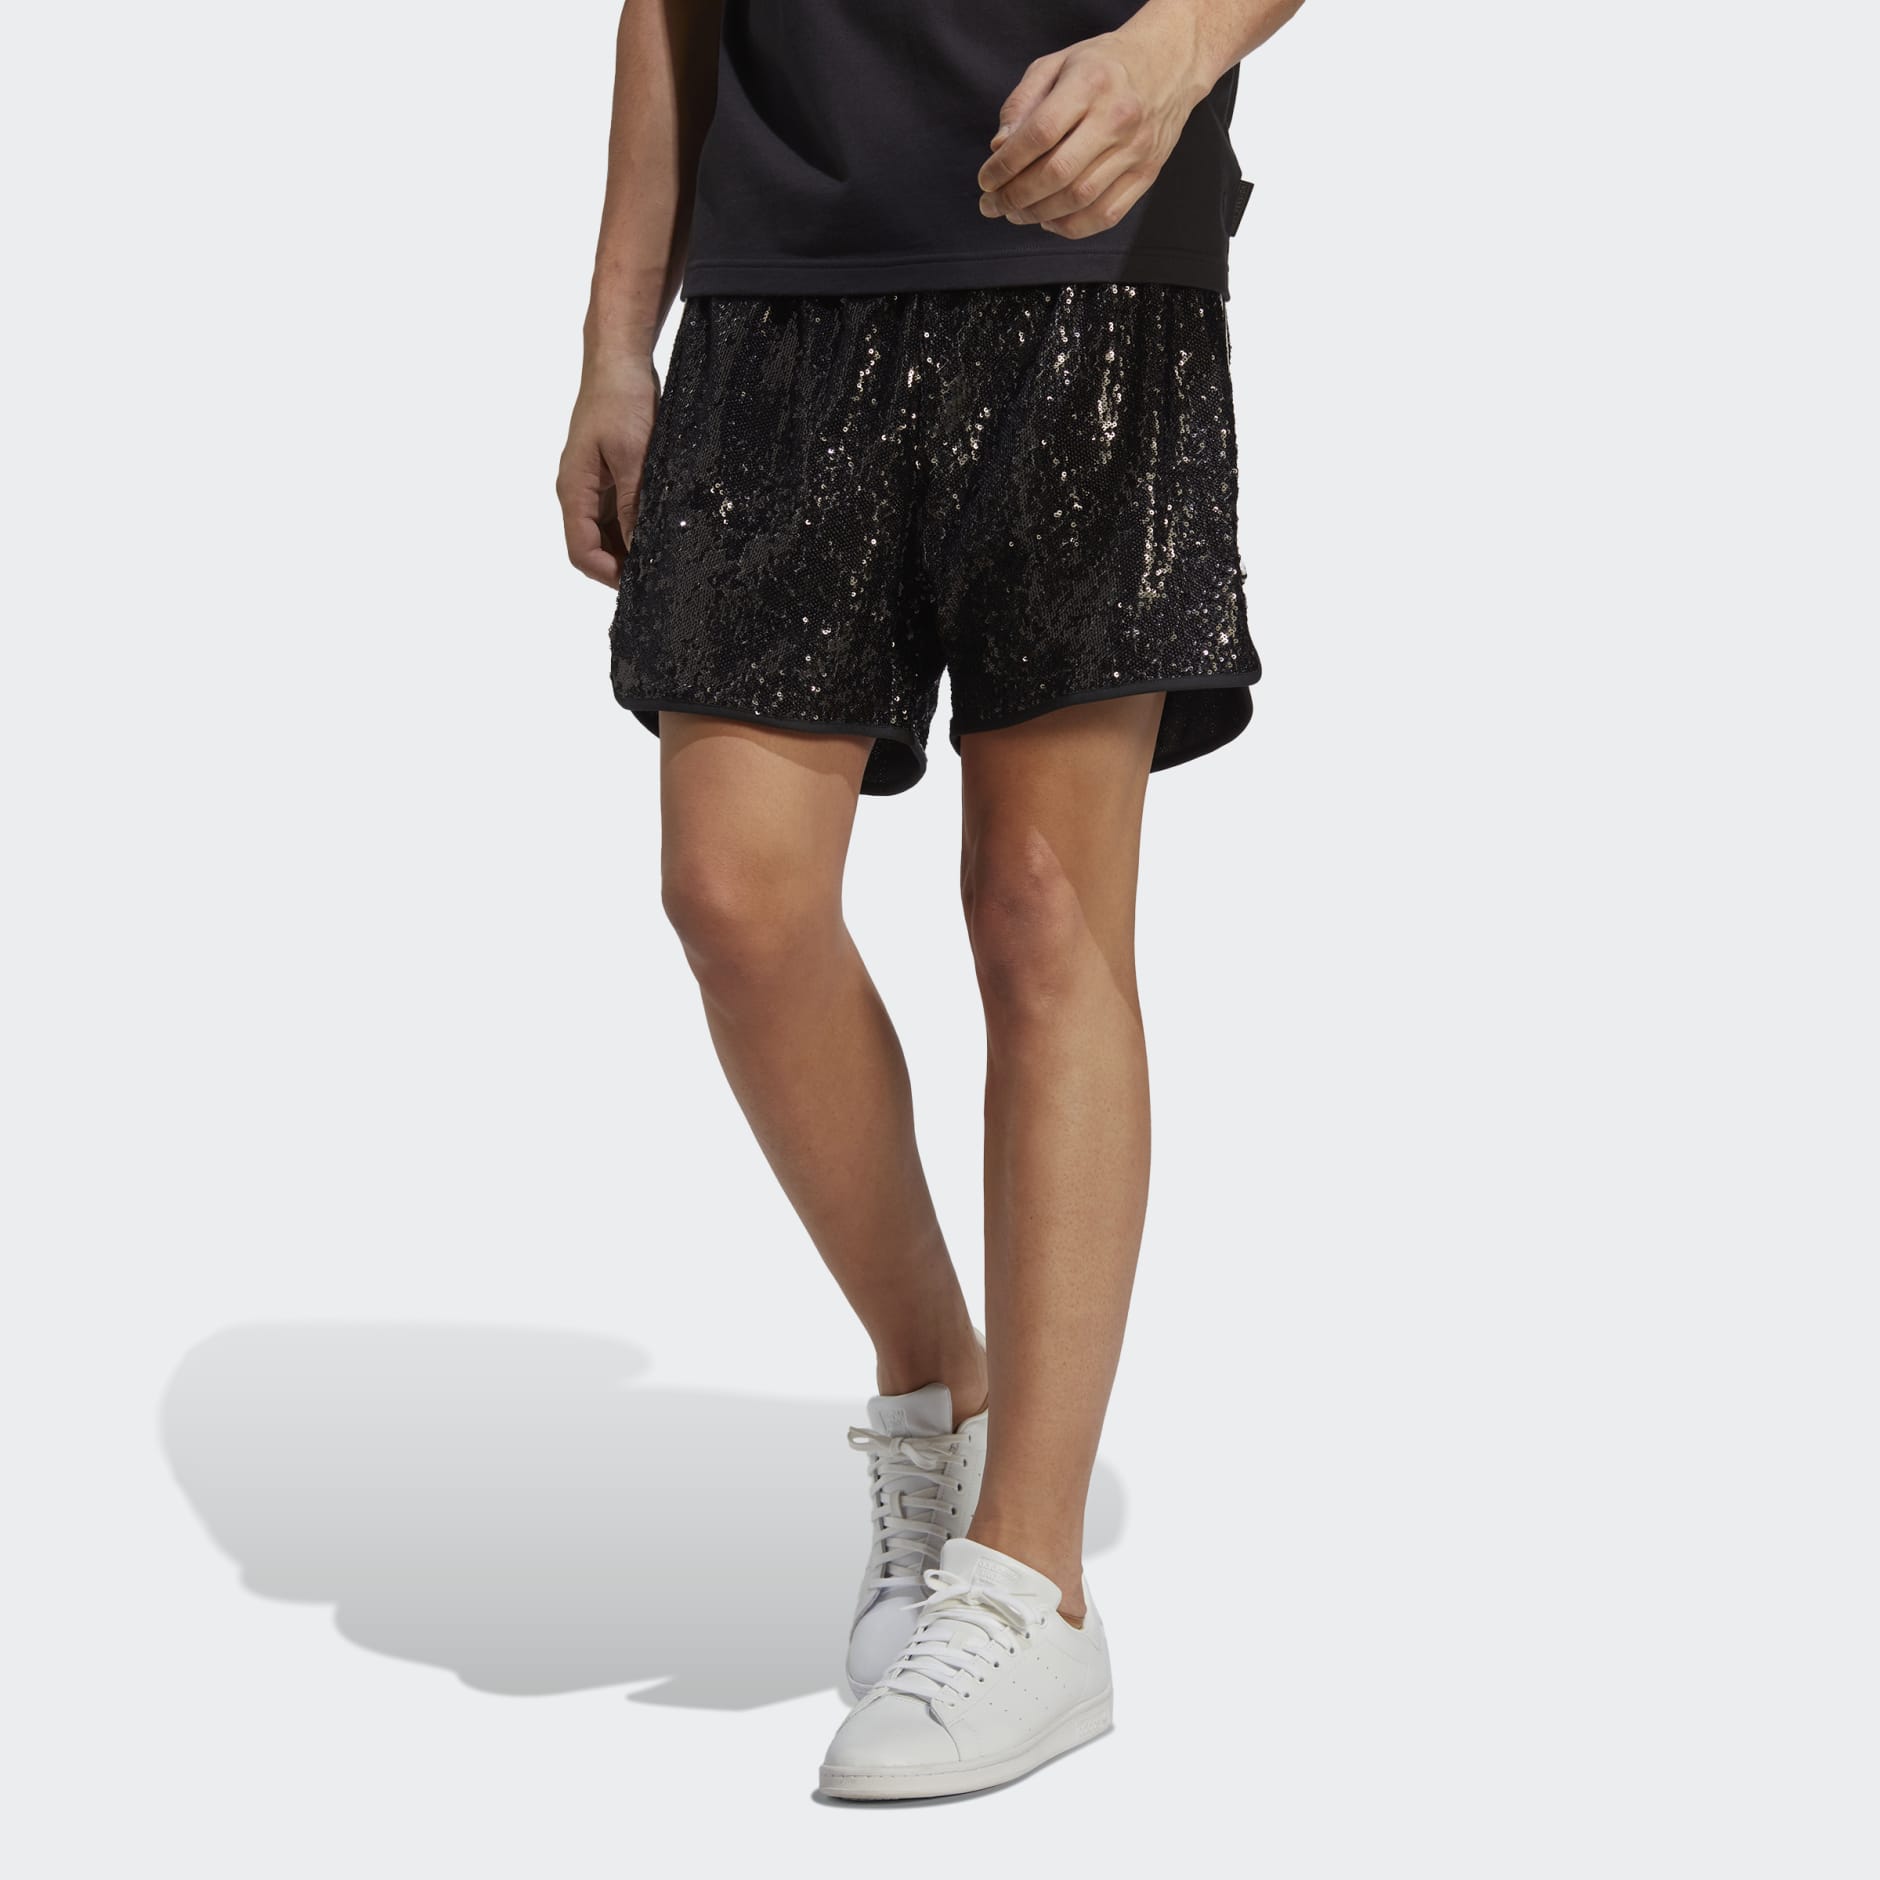 Buy Sequin Chap Shorts